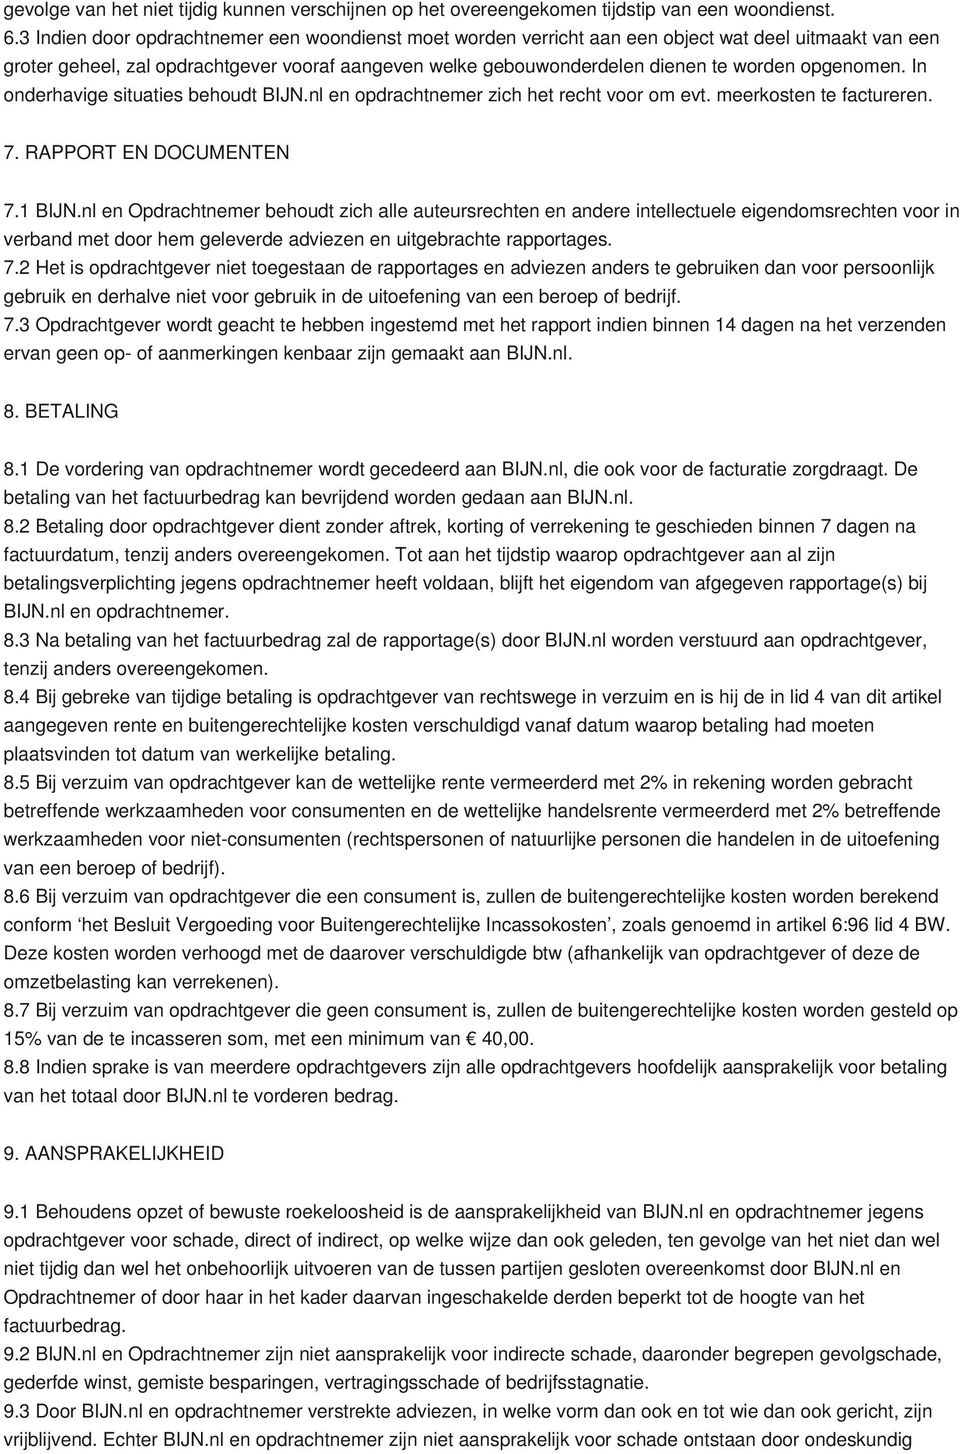 opgenomen. In onderhavige situaties behoudt BIJN.nl en opdrachtnemer zich het recht voor om evt. meerkosten te factureren. 7. RAPPORT EN DOCUMENTEN 7.1 BIJN.